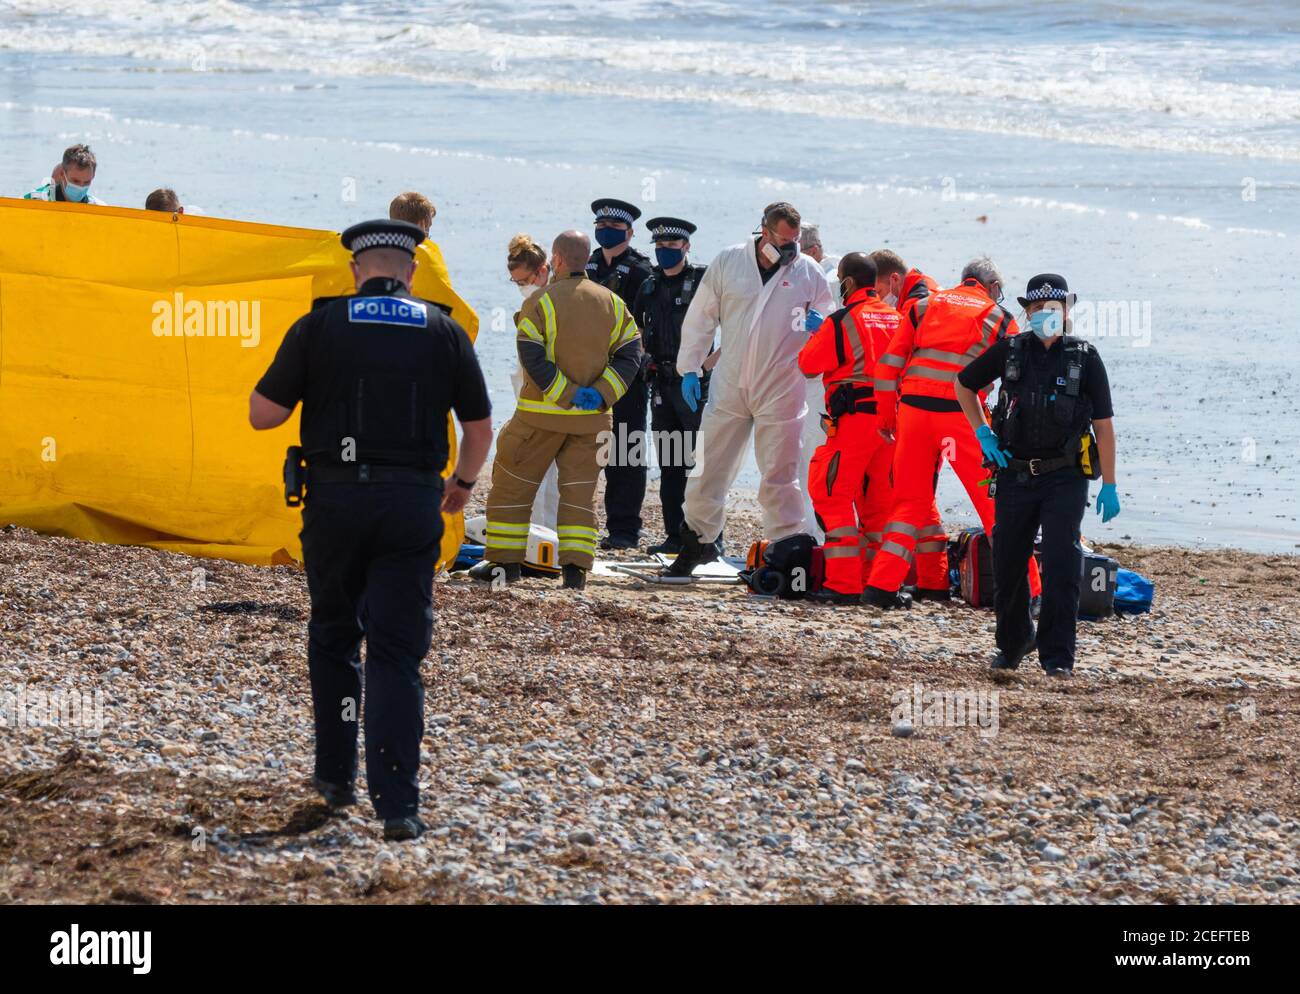 Rettungsdienste (Polizei, Feuerwehr, Krankenwagen, Sanitäter) bei einem Vorfall an einem Strand in Großbritannien. Alle tragen Gesichtsmasken durch COVID19 Coronavirus. Stockfoto